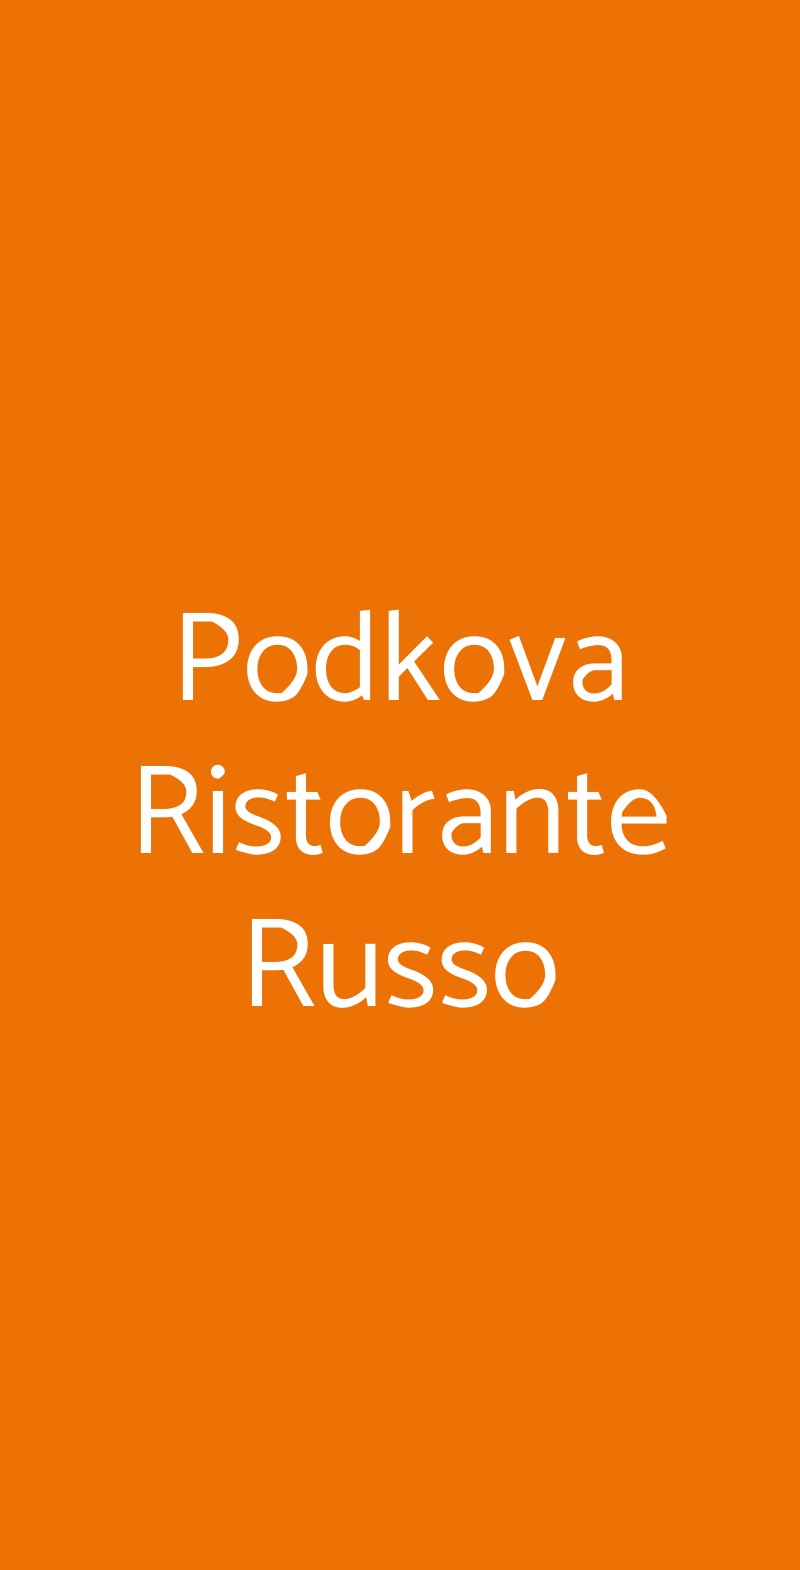 Podkova Ristorante Russo Milano menù 1 pagina